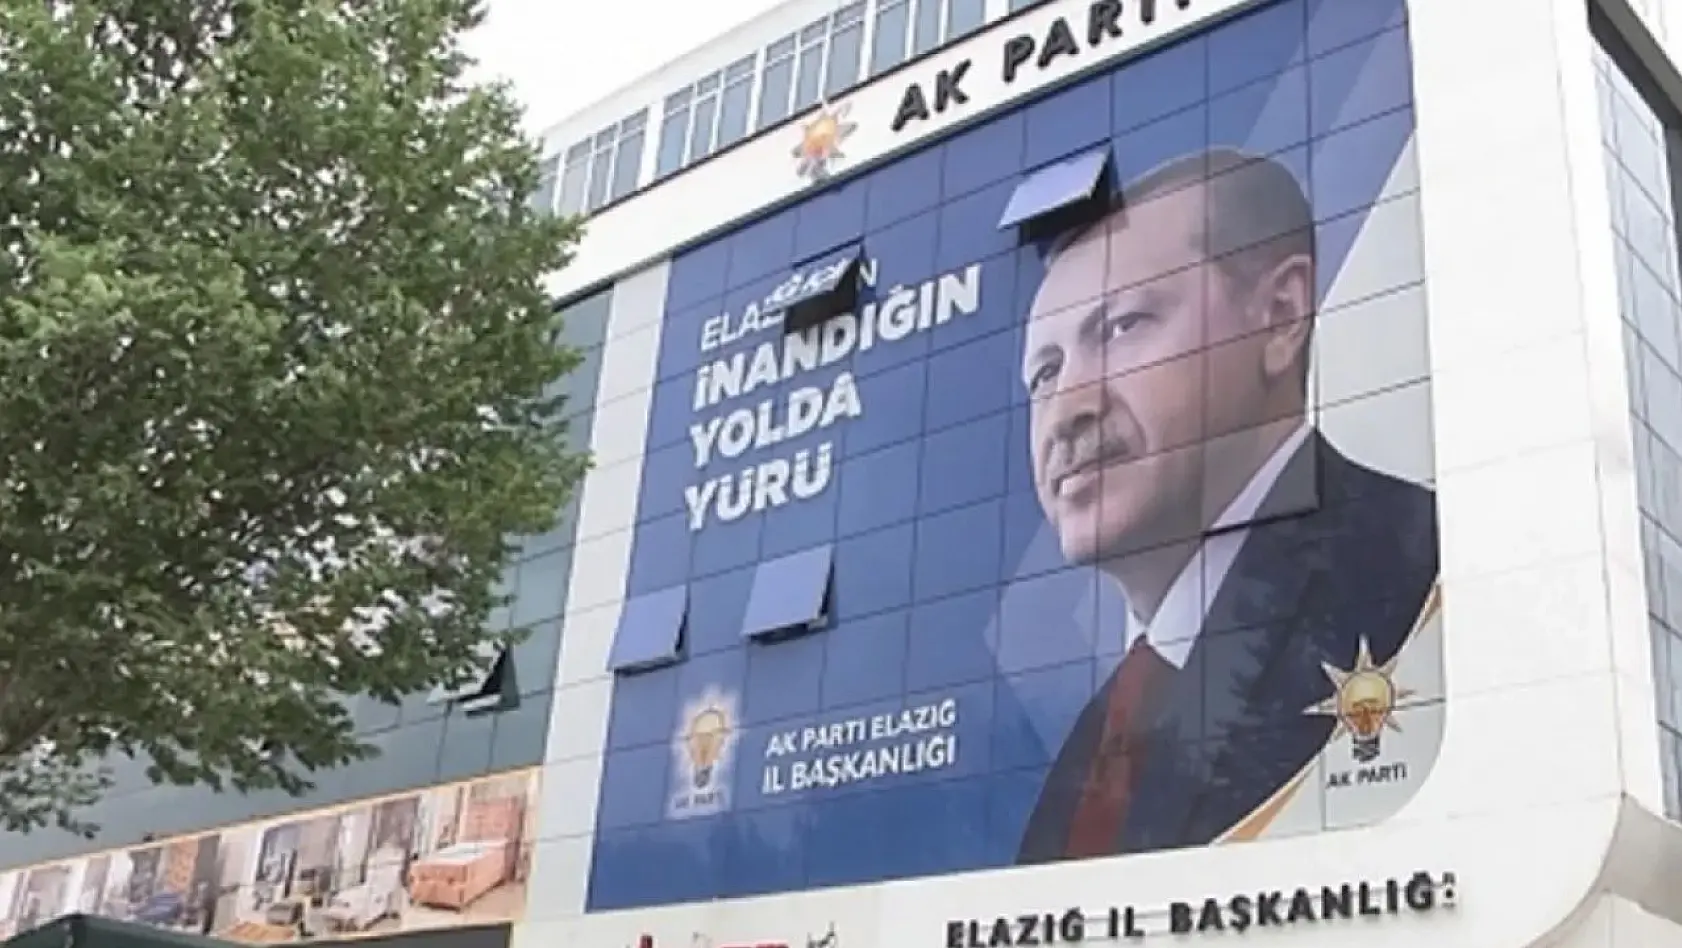 Elazığ'da, AK Parti Aday Adayları İçin Temayül Yoklaması Yapılacak